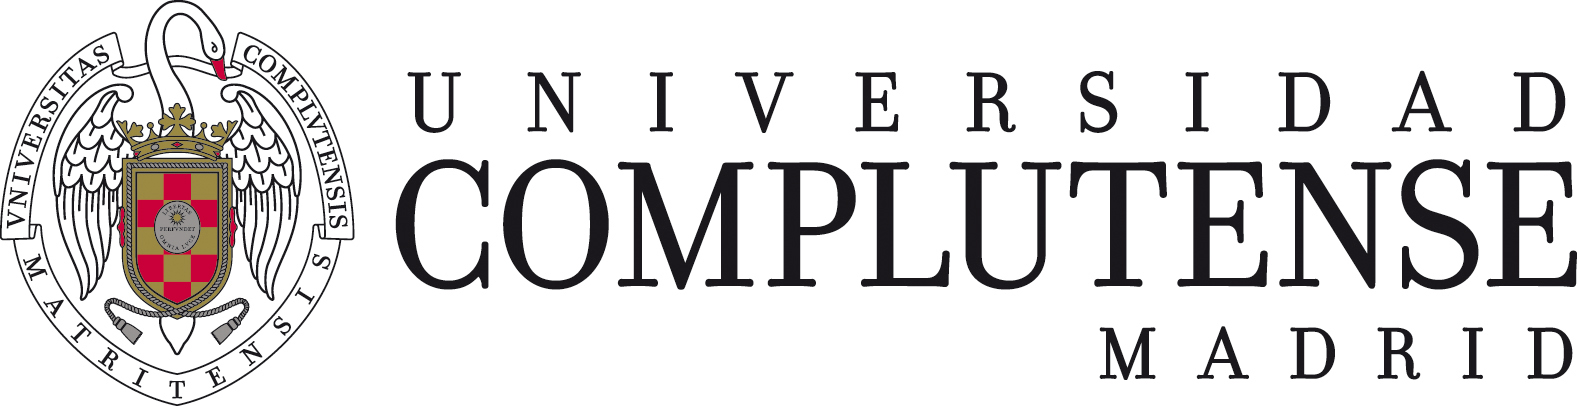 Logo de Universidad Complutense de Madrid